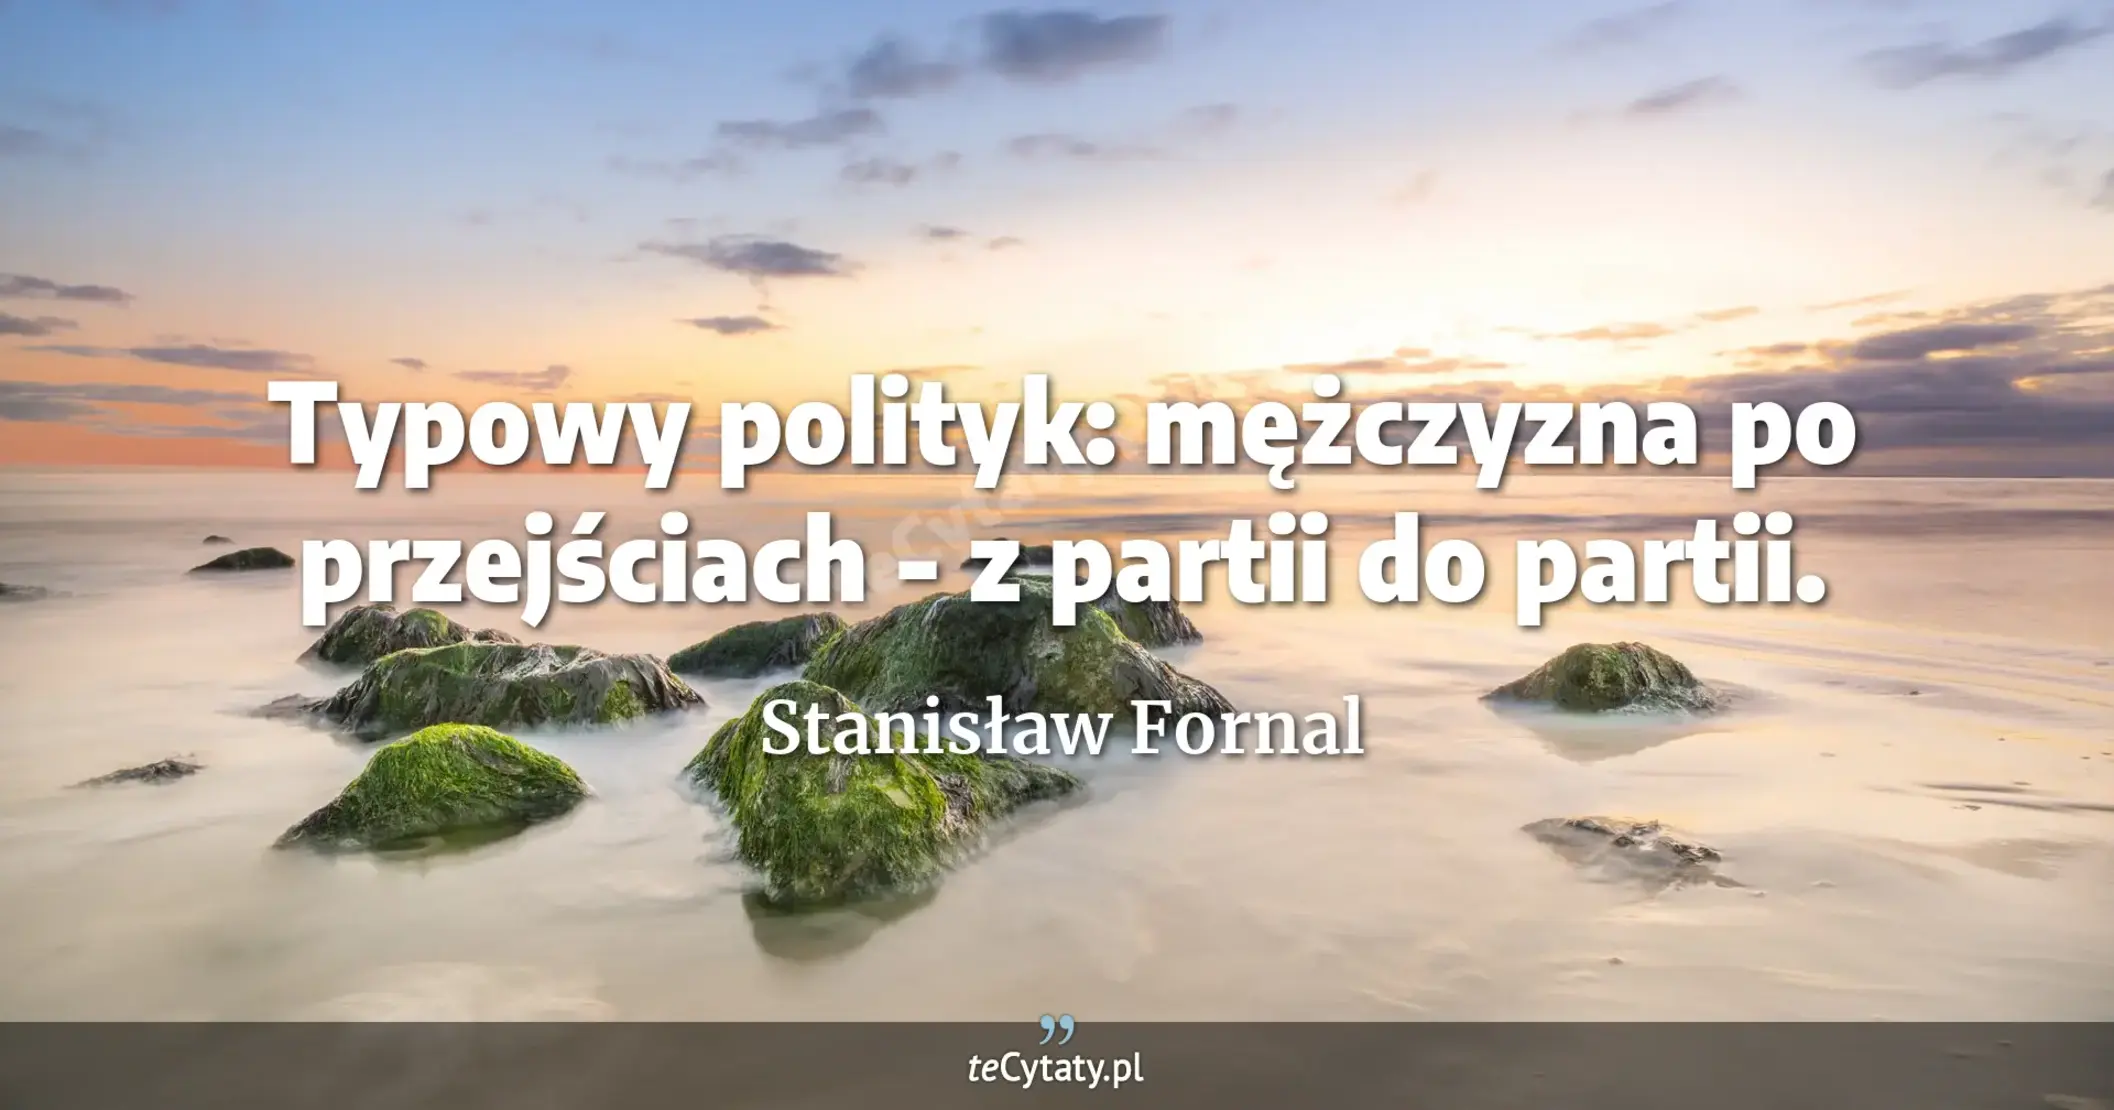 Typowy polityk: mężczyzna po przejściach - z partii do partii. - Stanisław Fornal